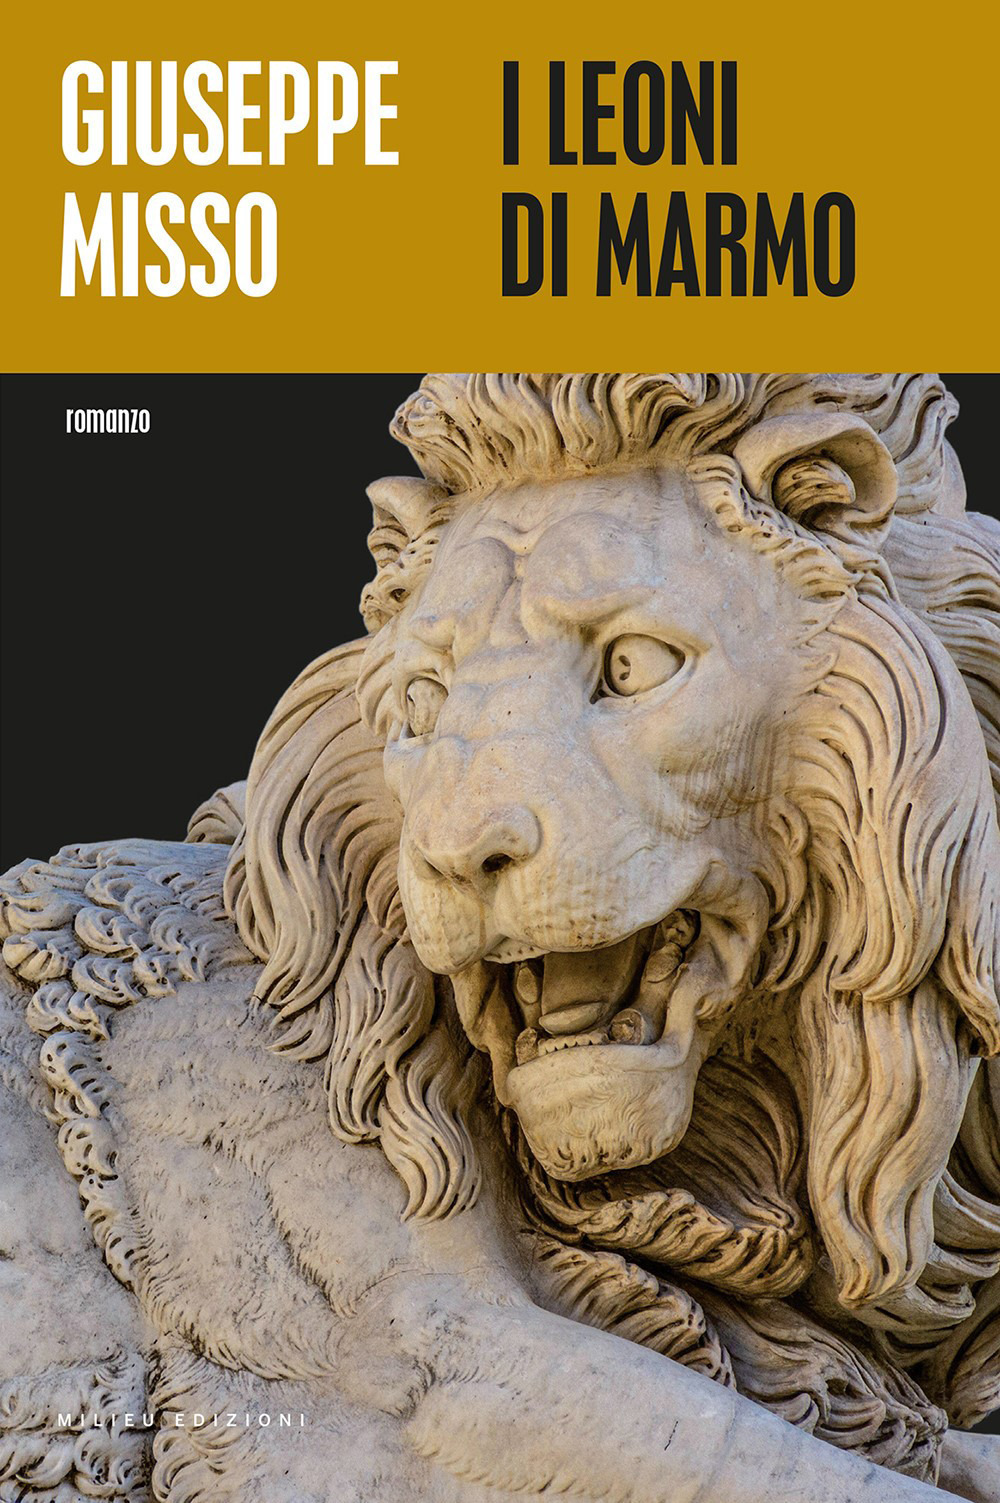 Libri Giuseppe Misso - I Leoni Di Marmo NUOVO SIGILLATO, EDIZIONE DEL 04/03/2021 SUBITO DISPONIBILE